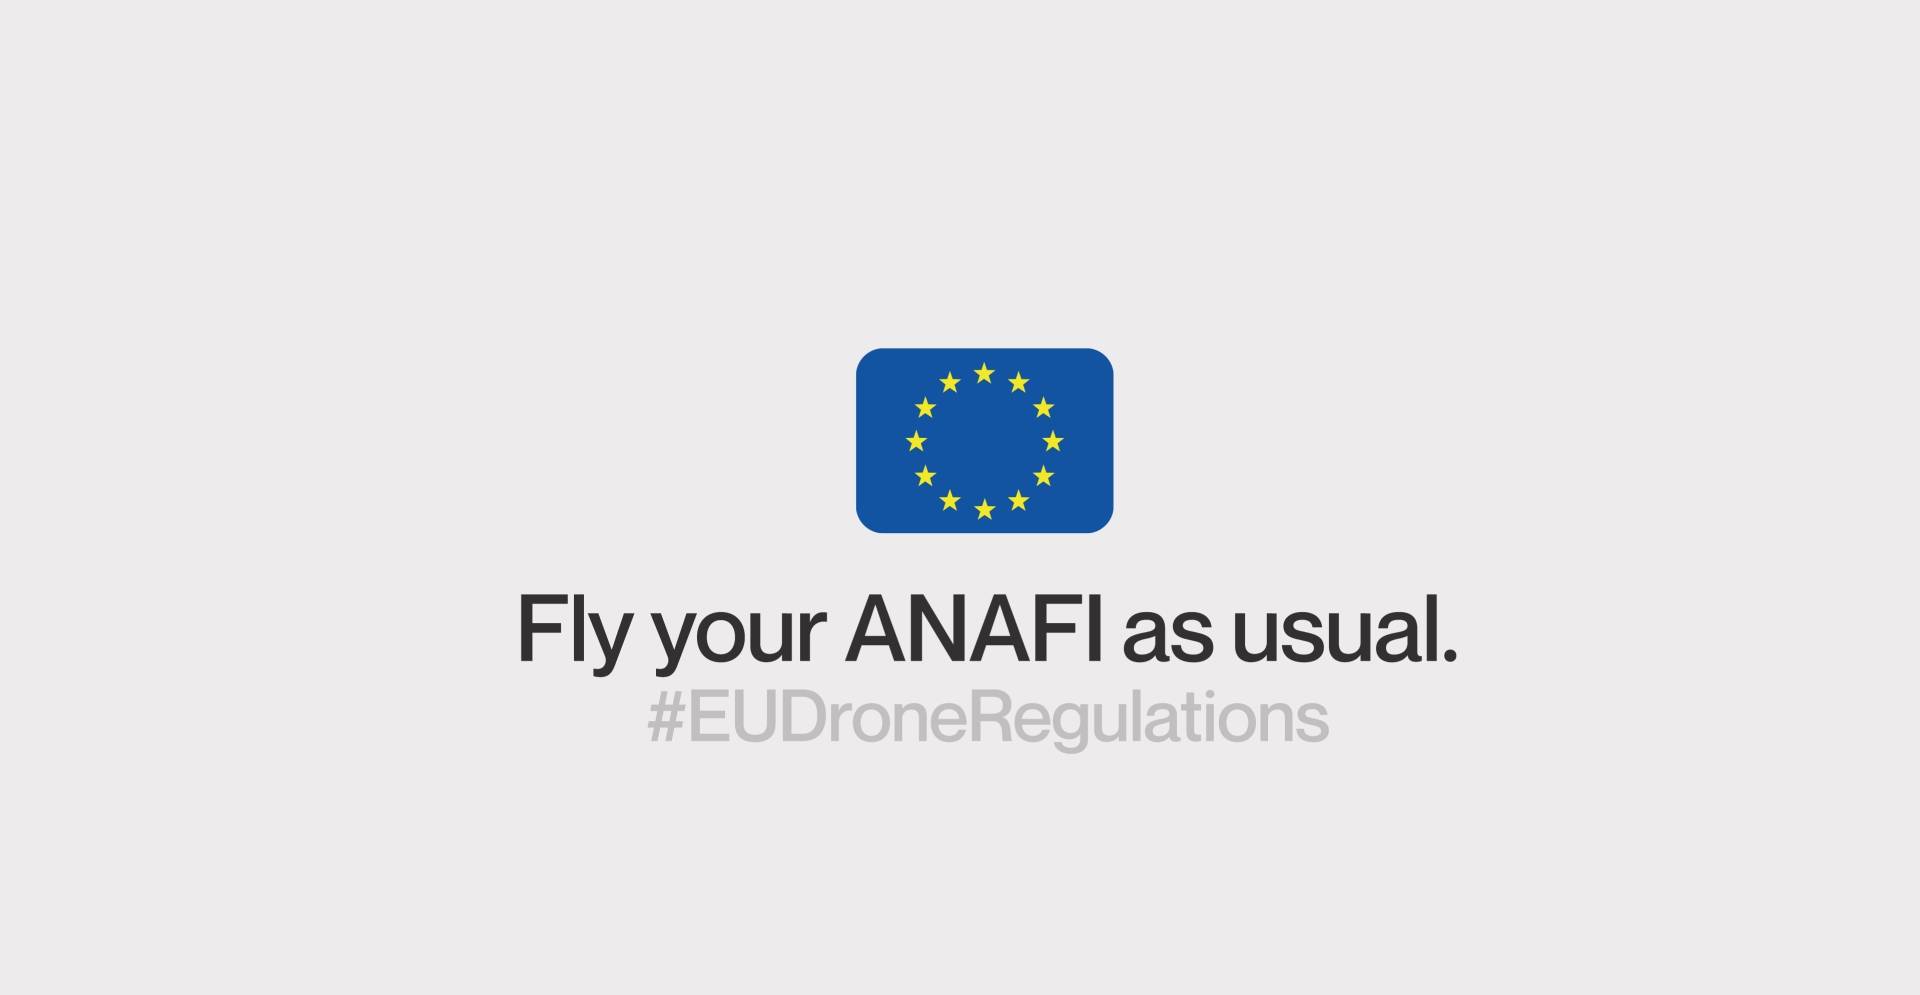 EU drone regulations